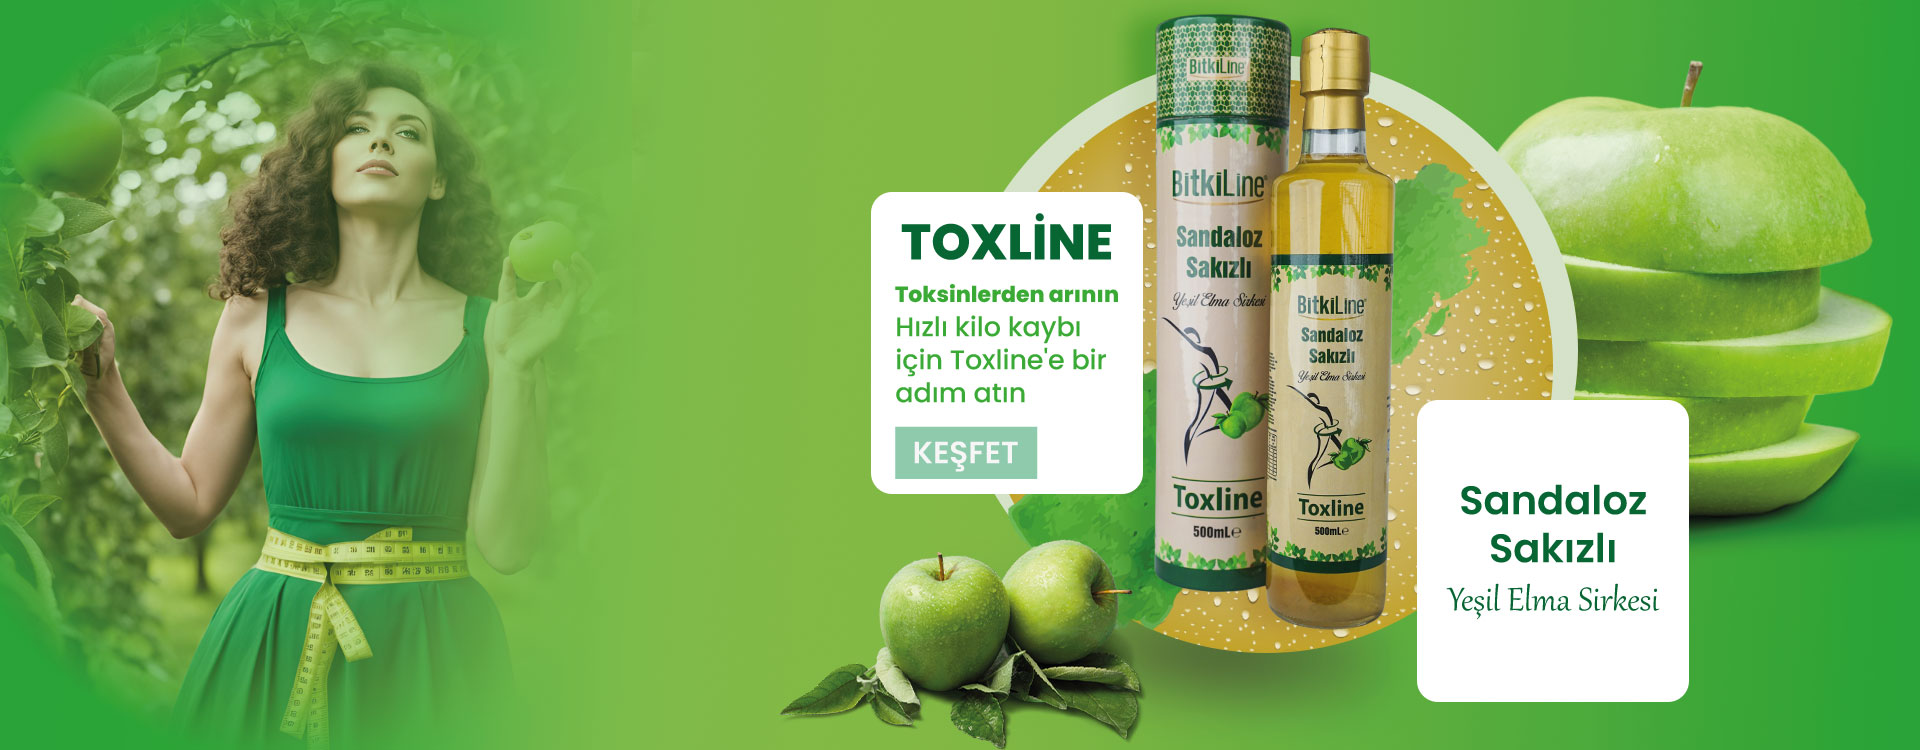 Toxline Sandaloz Sakızlı Yeşil Elma Detox Sirke